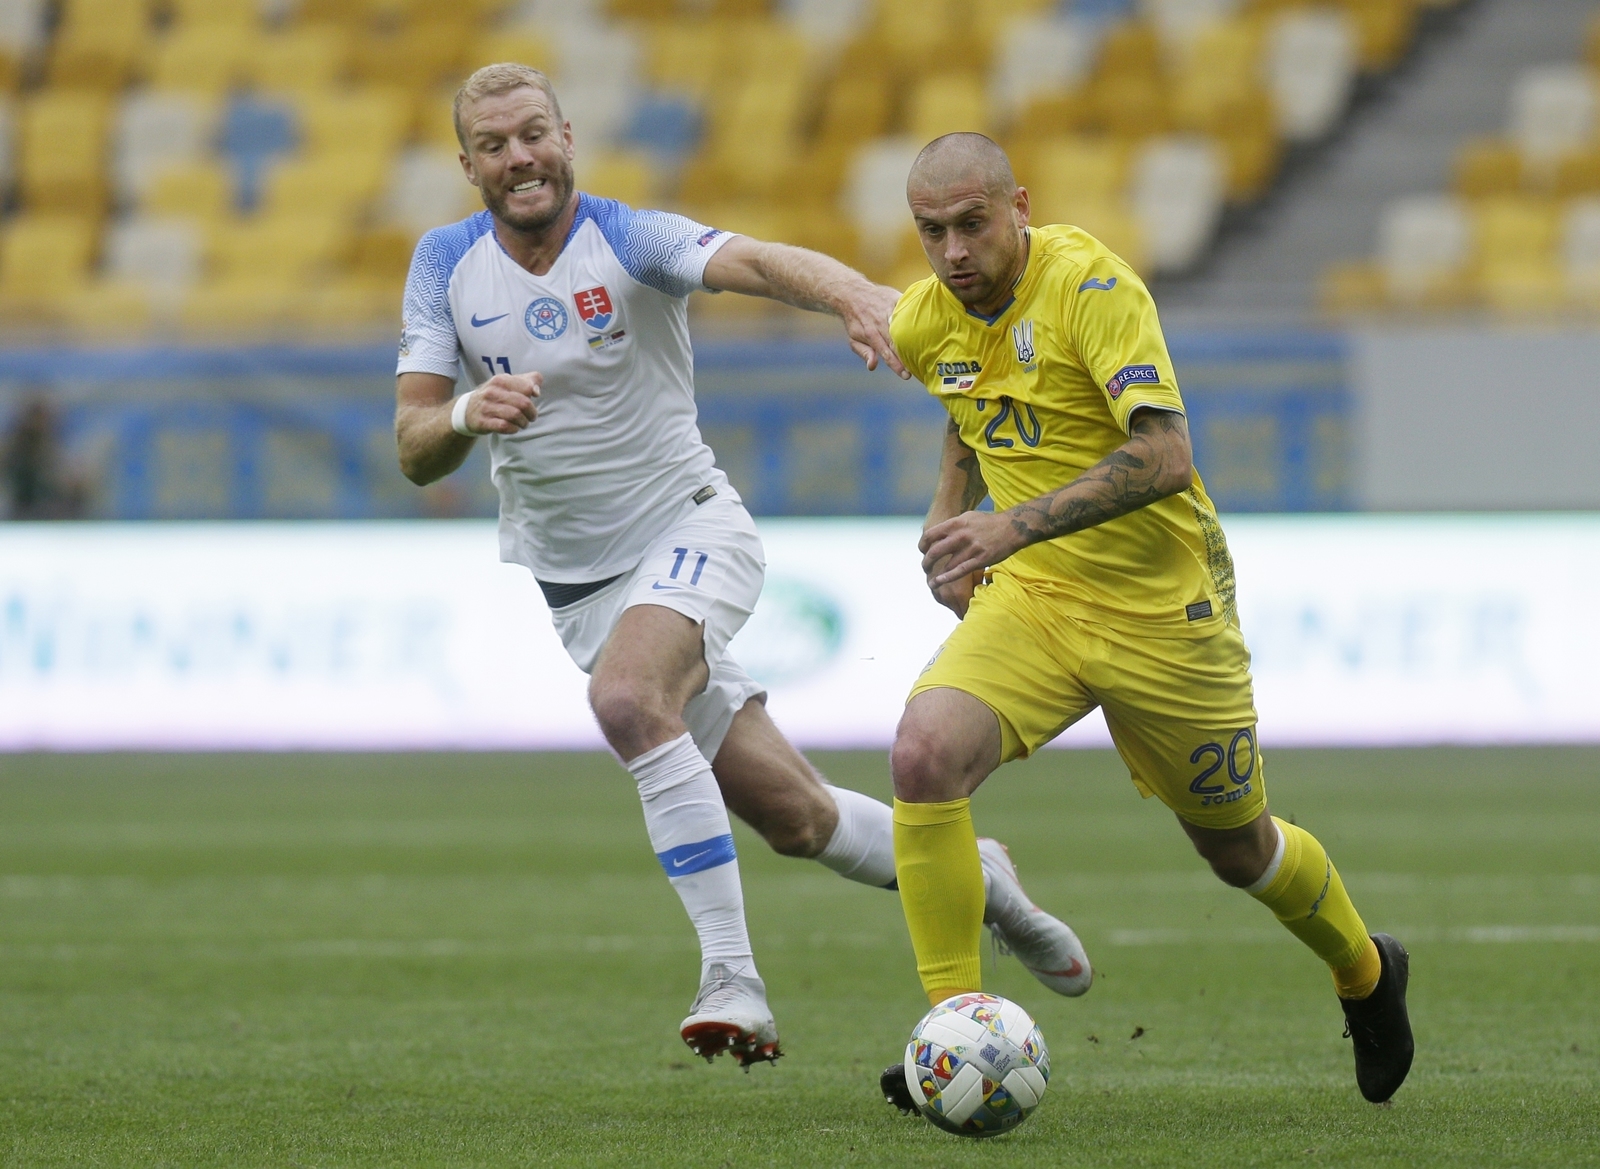 Club ruso entra en polémica por contratar a jugador ucraniano